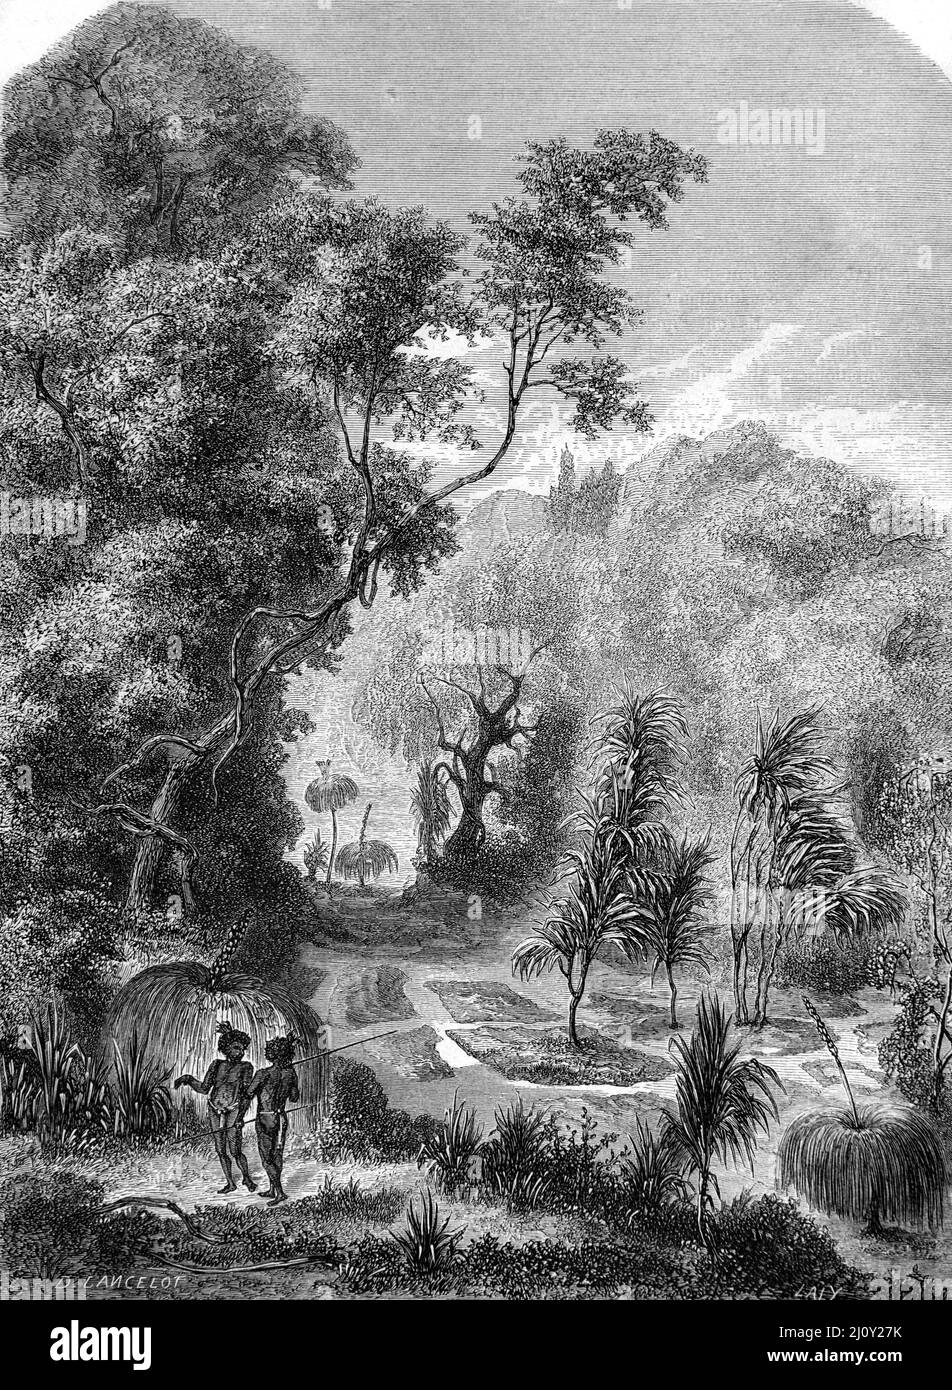 Tombes australiennes d'Autochtones dans la forêt Australie. Illustration ancienne ou gravure 1860. Banque D'Images